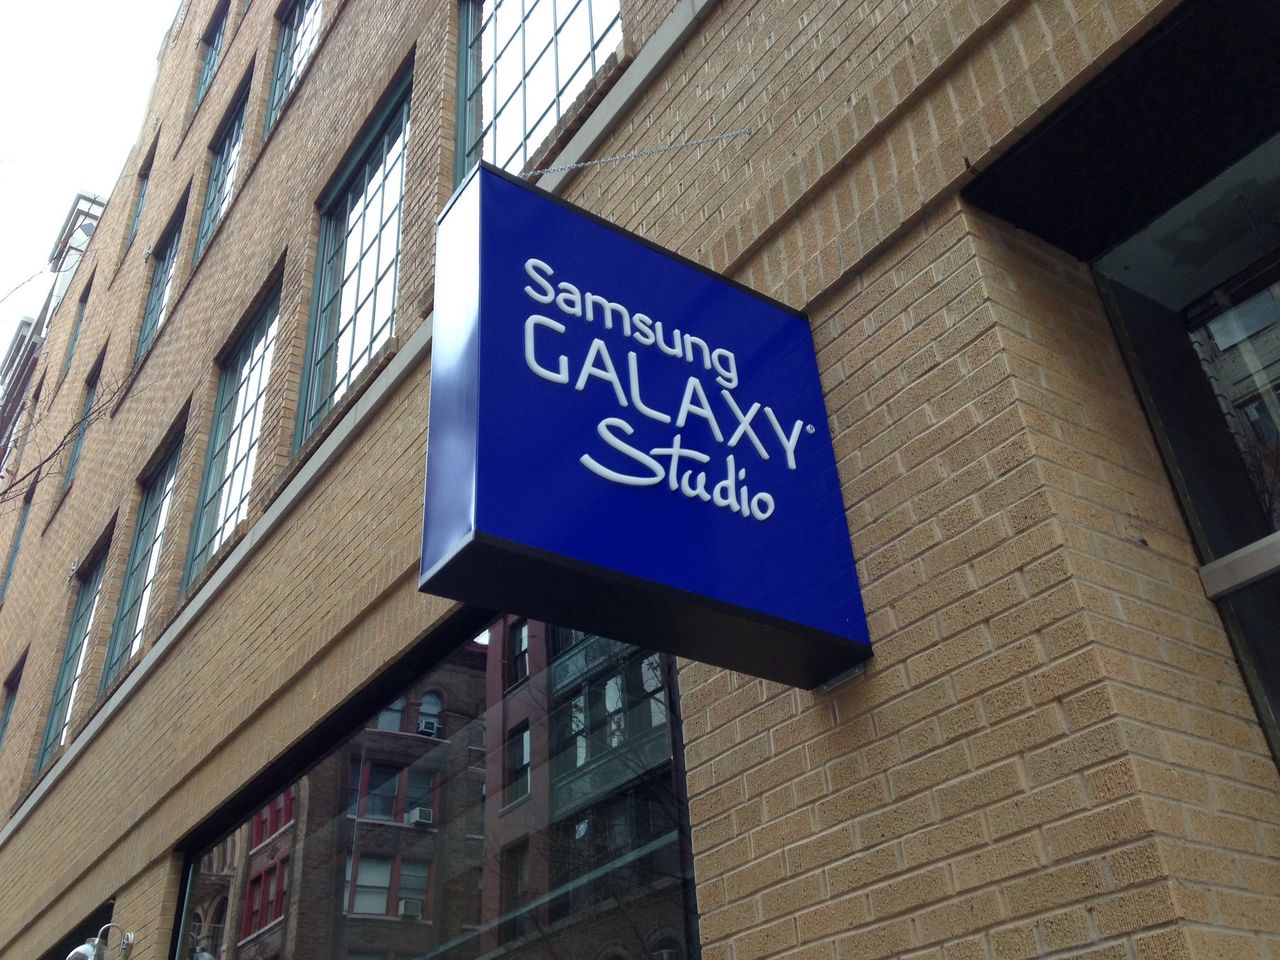 Z wizytą w Galaxy Studio w Nowym Jorku — portfolio Samsunga z rozmachem